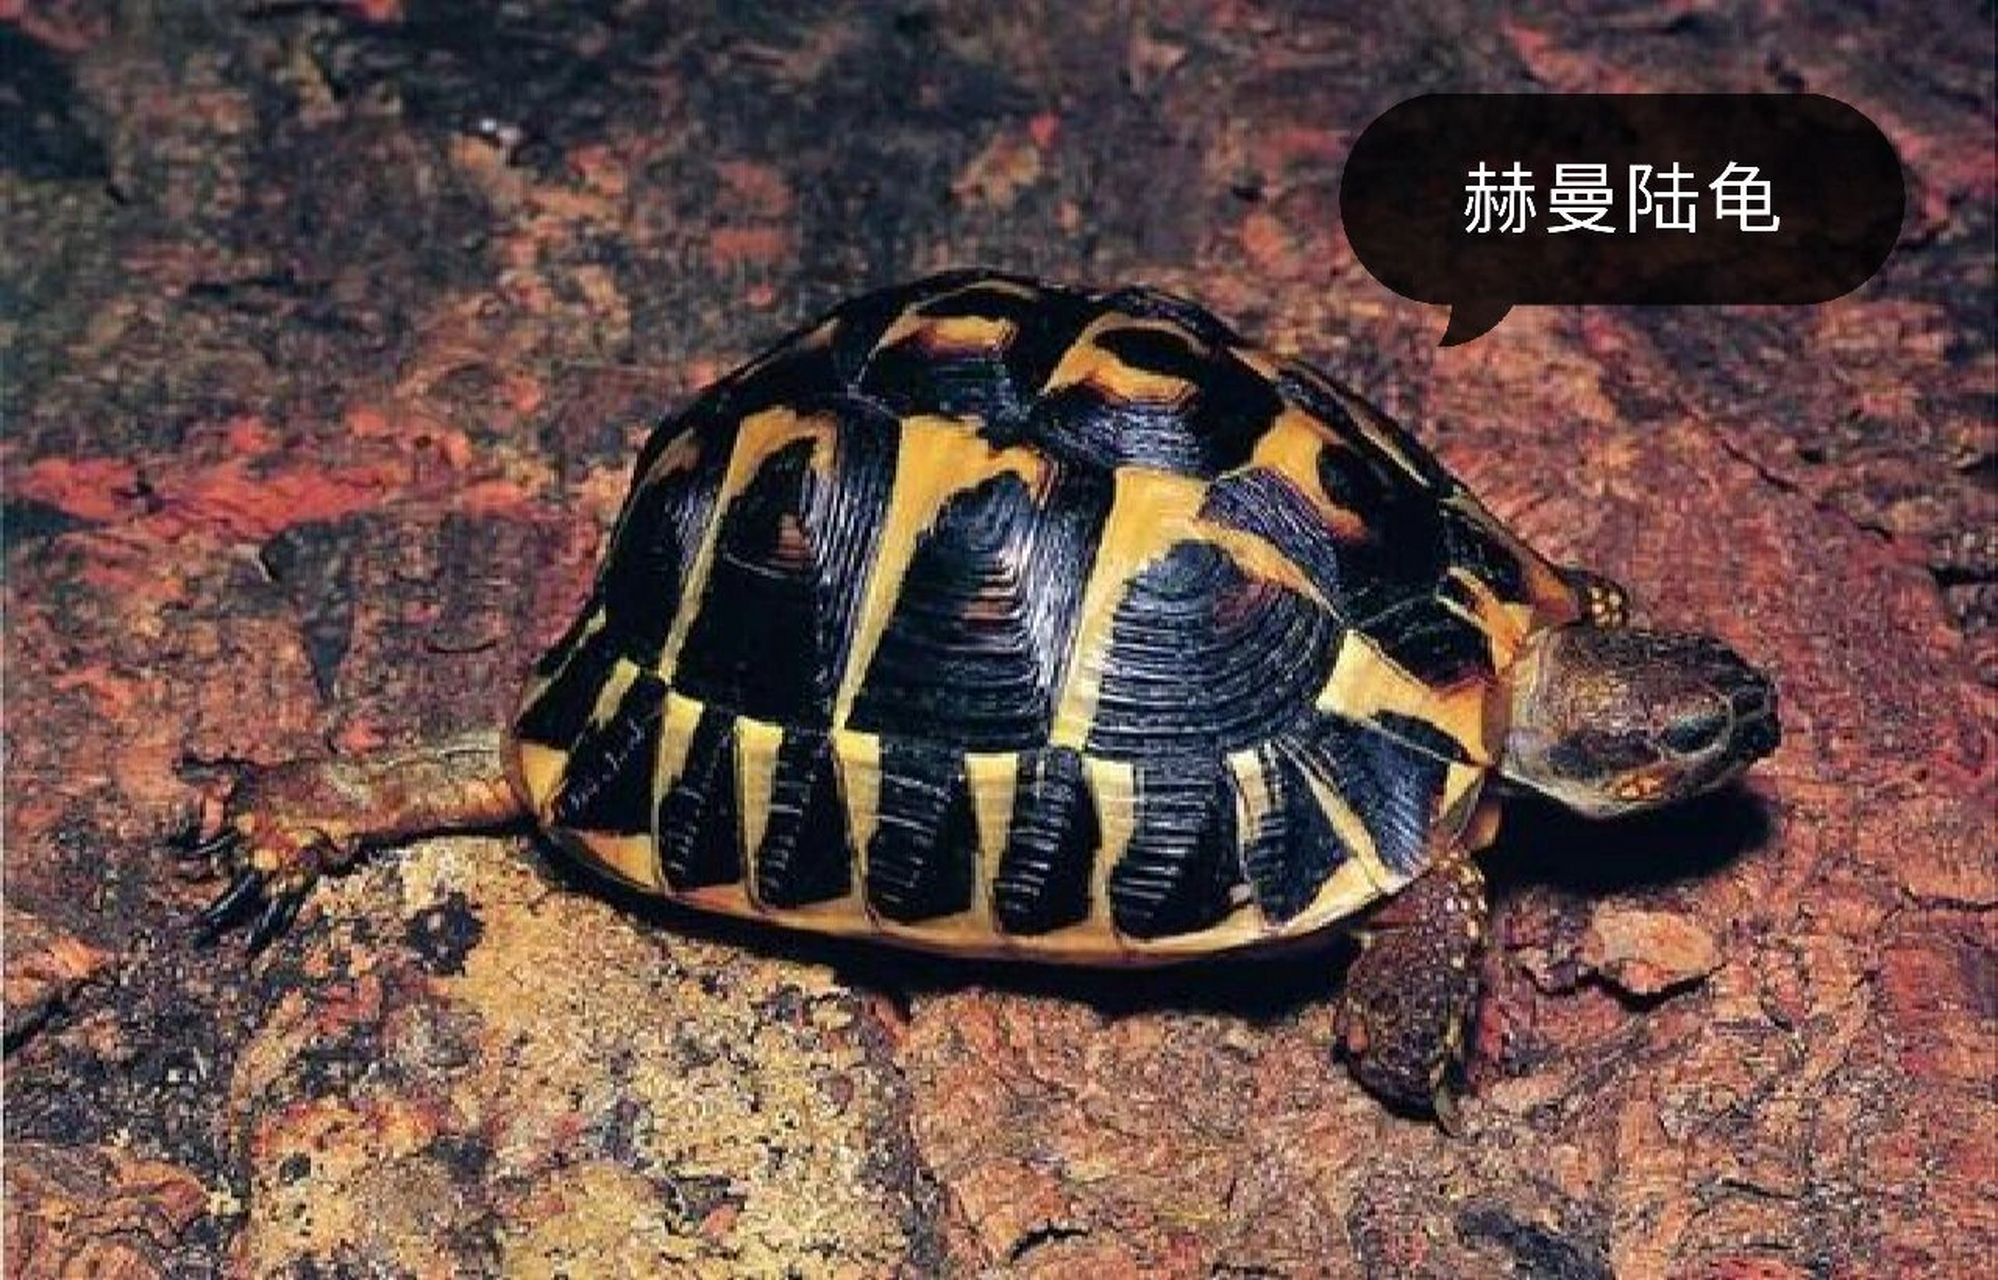 陆龟品种大全① 赫曼陆龟 赫曼陆龟是欧系陆龟的代表品种之一,强健的